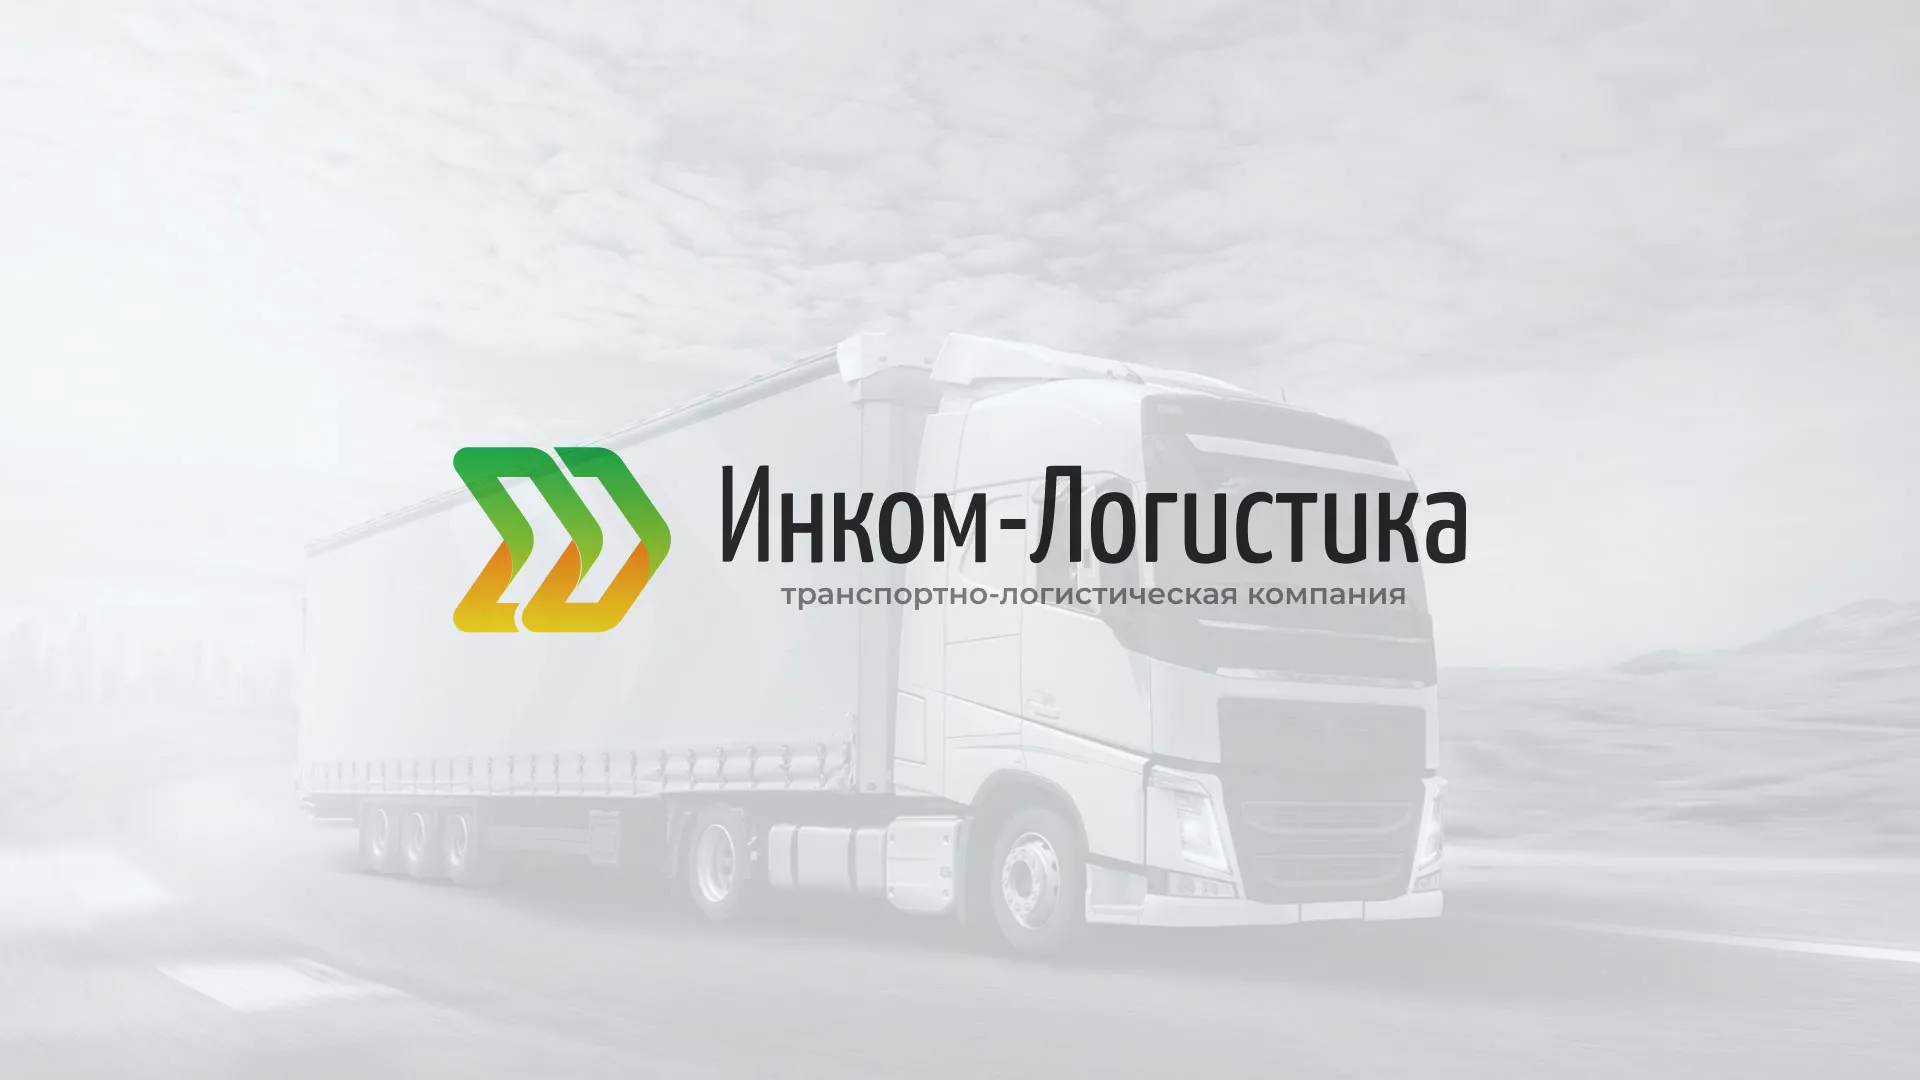 Разработка логотипа и сайта компании «Инком-Логистика» в Урус-Мартане